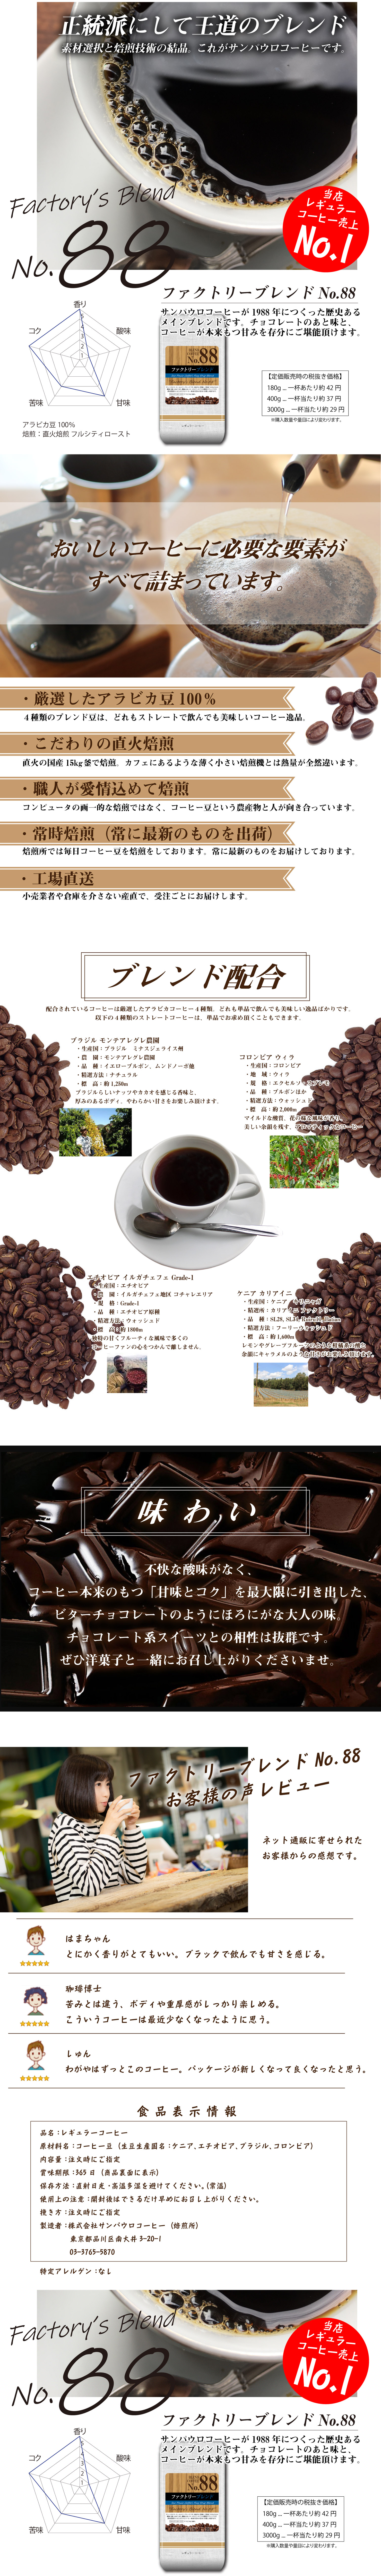 ファクトリーブレンド No.88 （ビターブレンド） | ブレンド | 【公式直販】SAO PAULO COFFEE